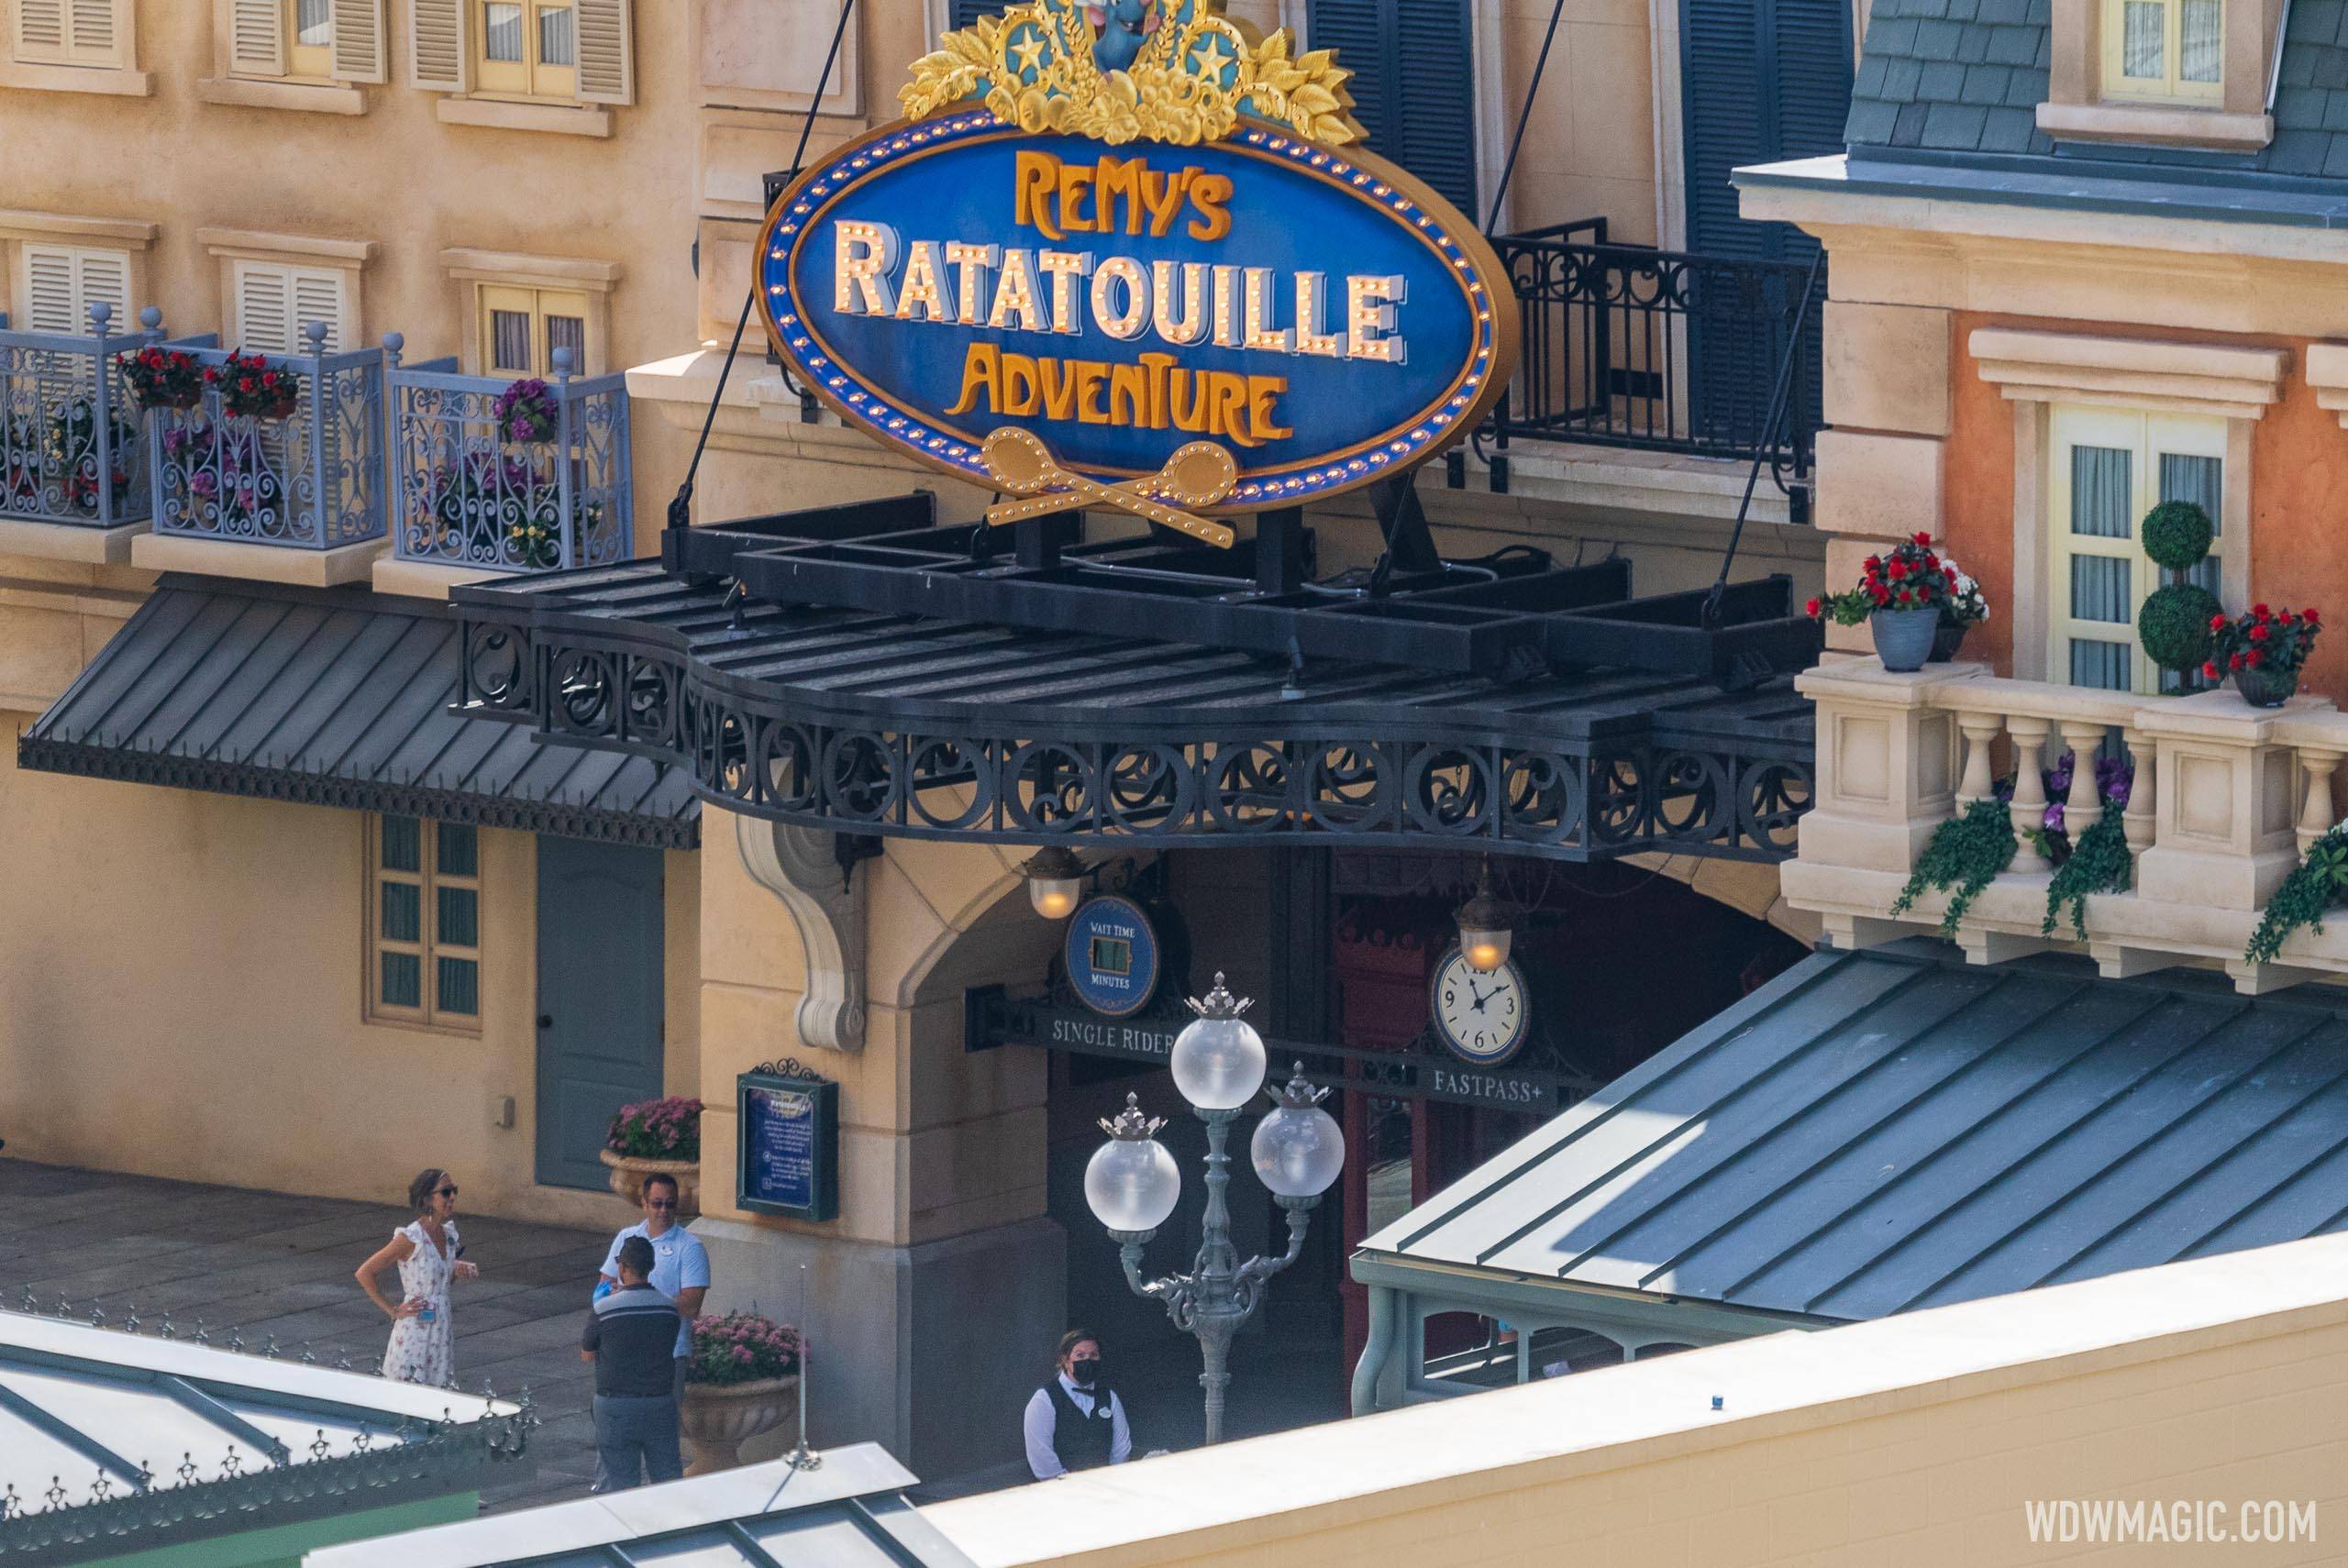 Remy's Ratatouille Adventure Cast Member previews